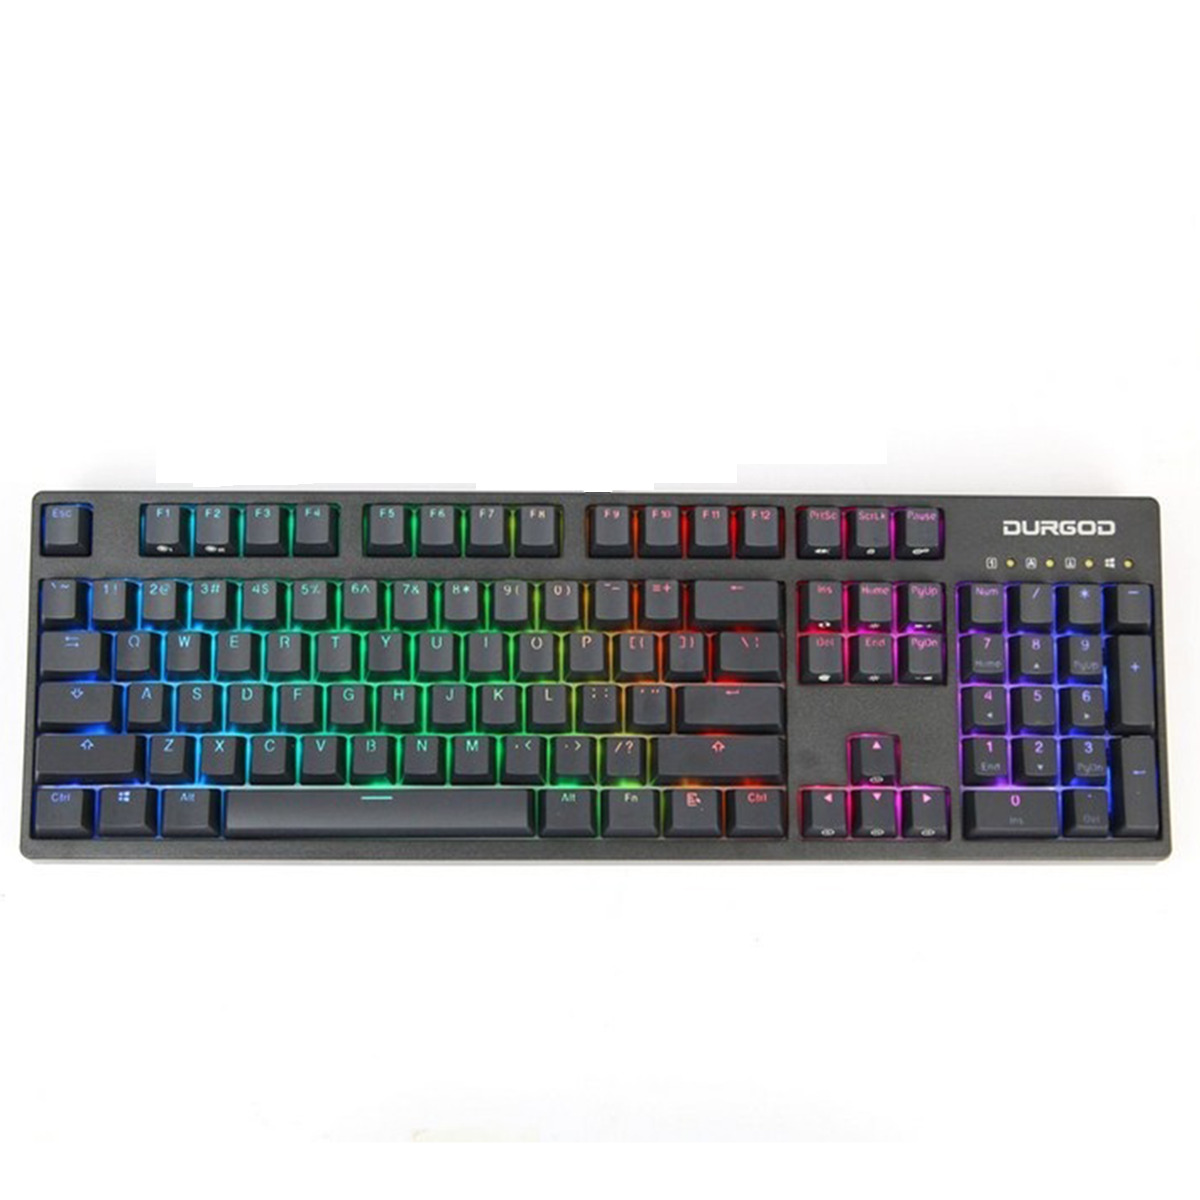 Bàn phím - Keyboard Durgod V104s RGB